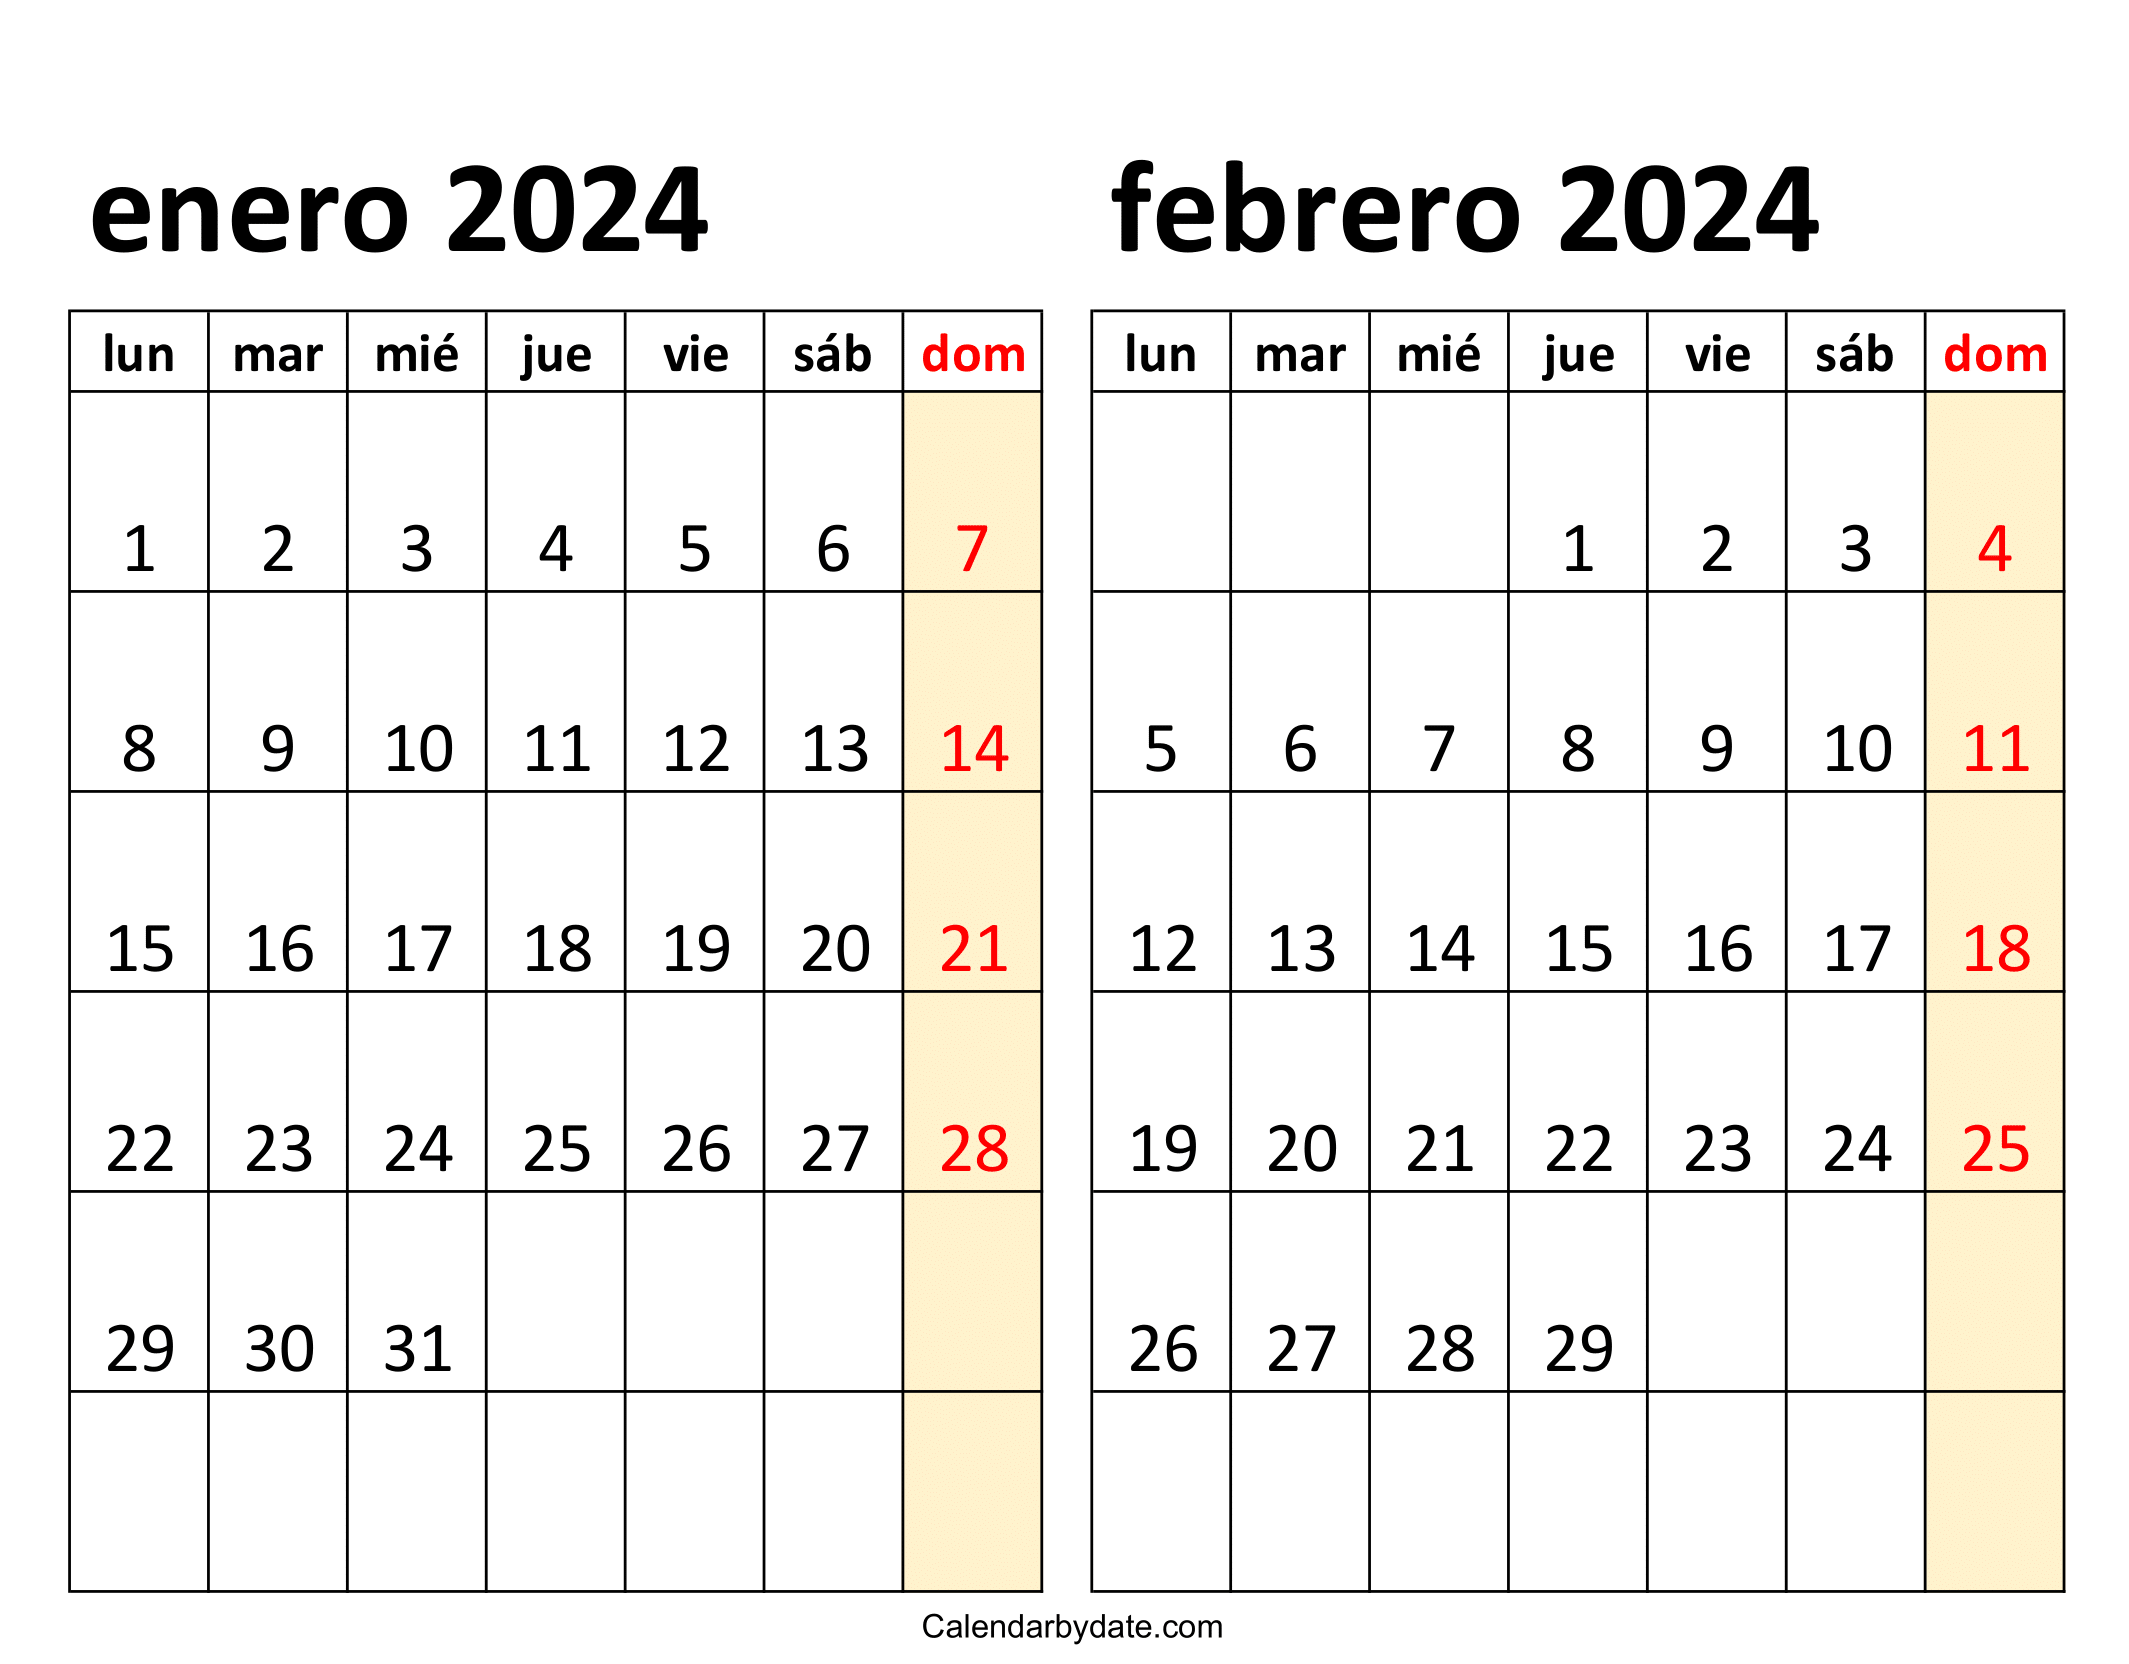 calendario 2024 enero y febrero para imprimir